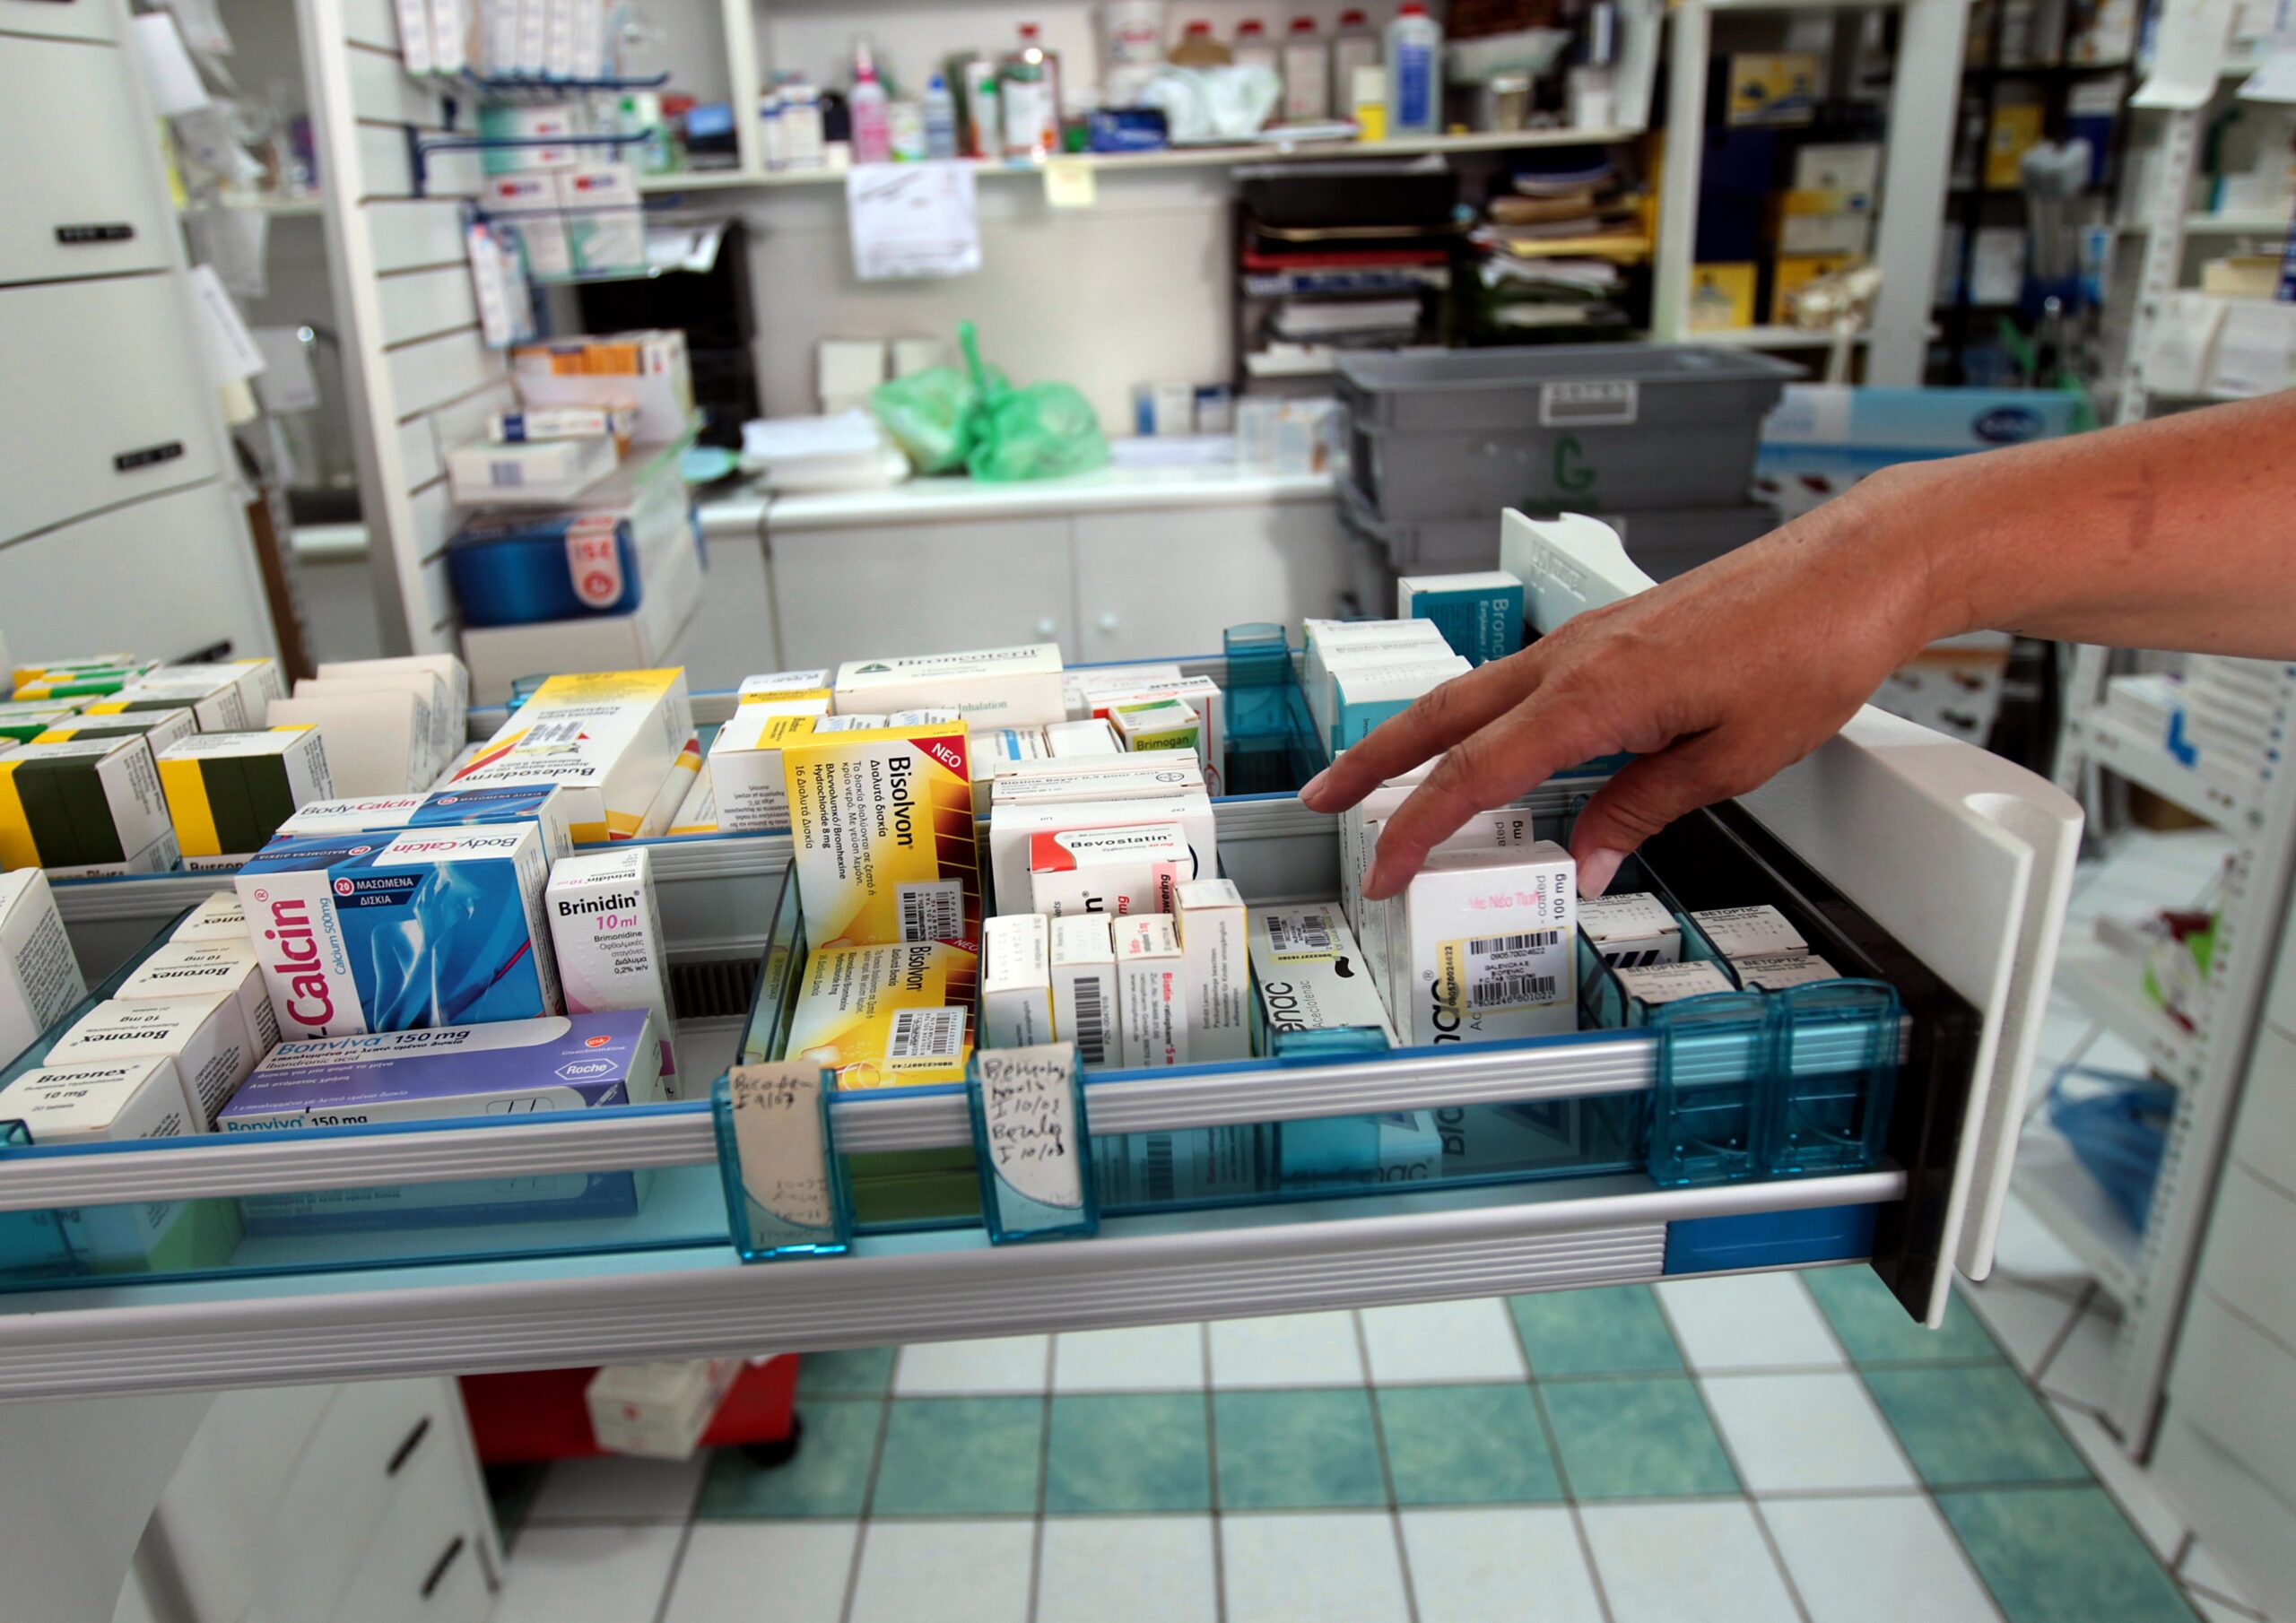 Ελλείψεις φαρμάκων: Νέα λίστα απαγόρευσης του ΕΟΦ – Η πρώτη αντίδραση των φαρμακοποιών